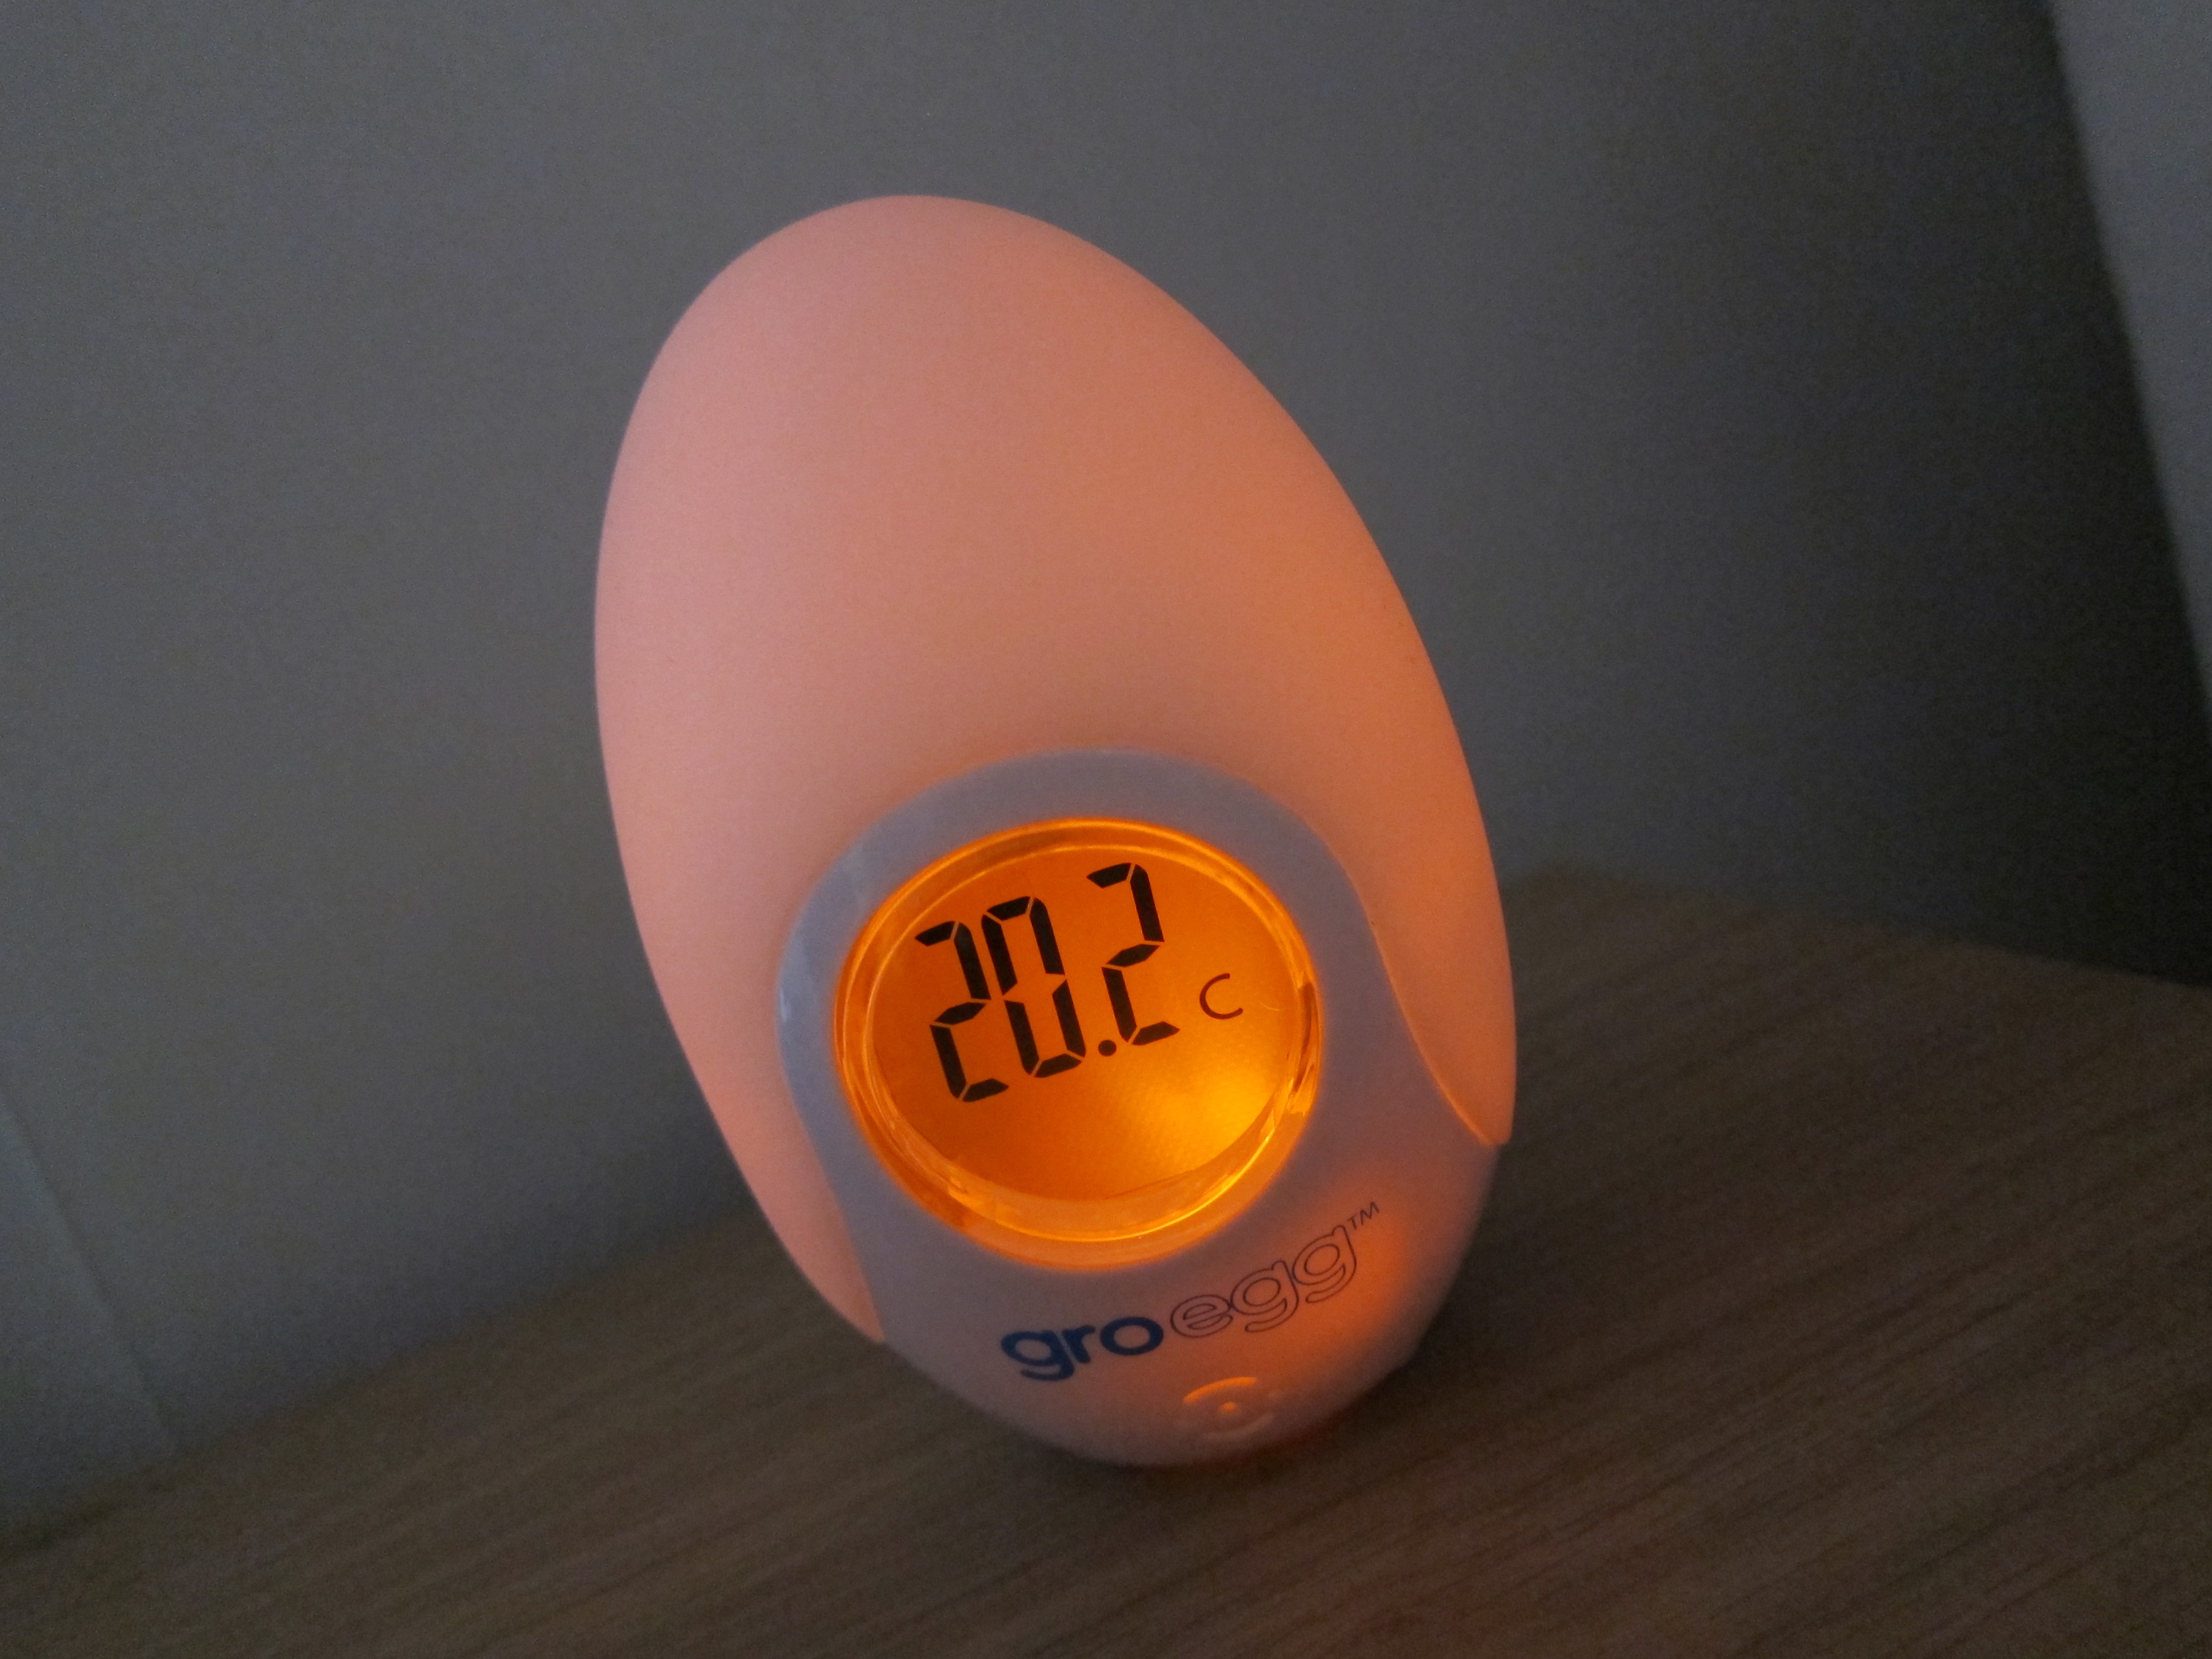 Датчик на яйцо в инкубаторе. Термометр на яйцо для инкубатора. Датчик температуры яйца Egg sensor. Температурный датчик на яйцо при инкубации.